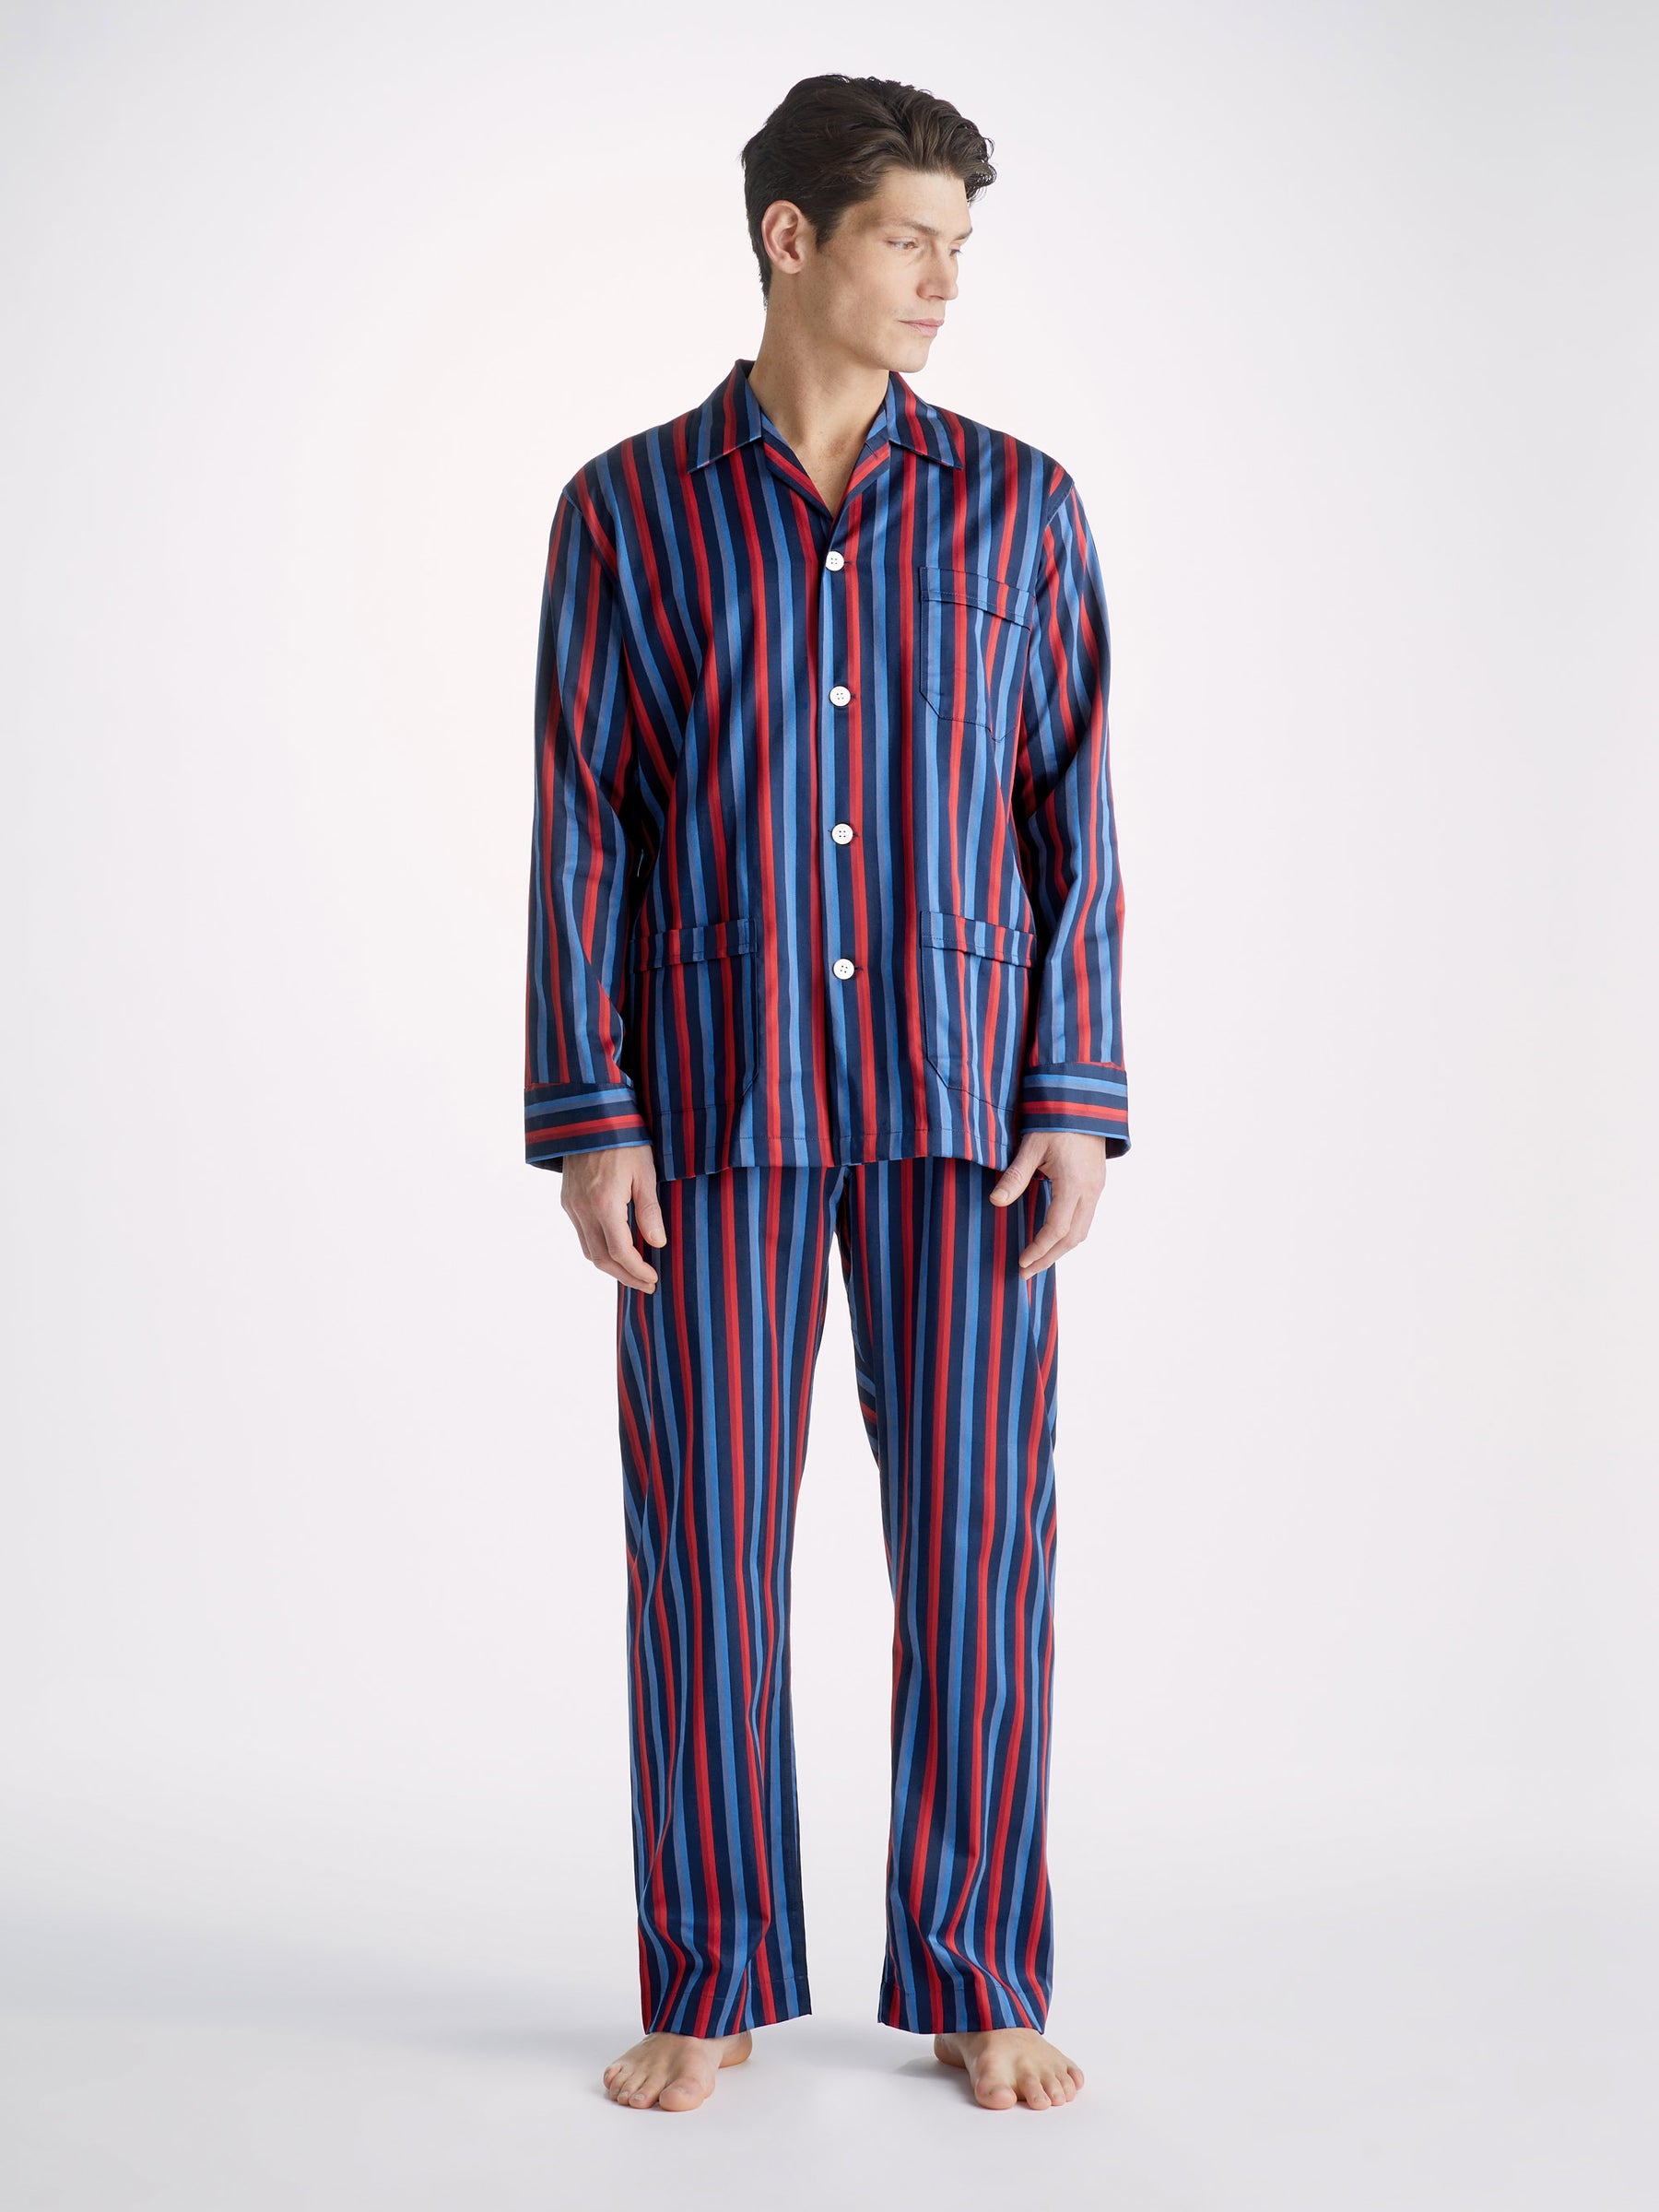 Men's Classic Fit Pajamas Wellington 55 Cotton Navy